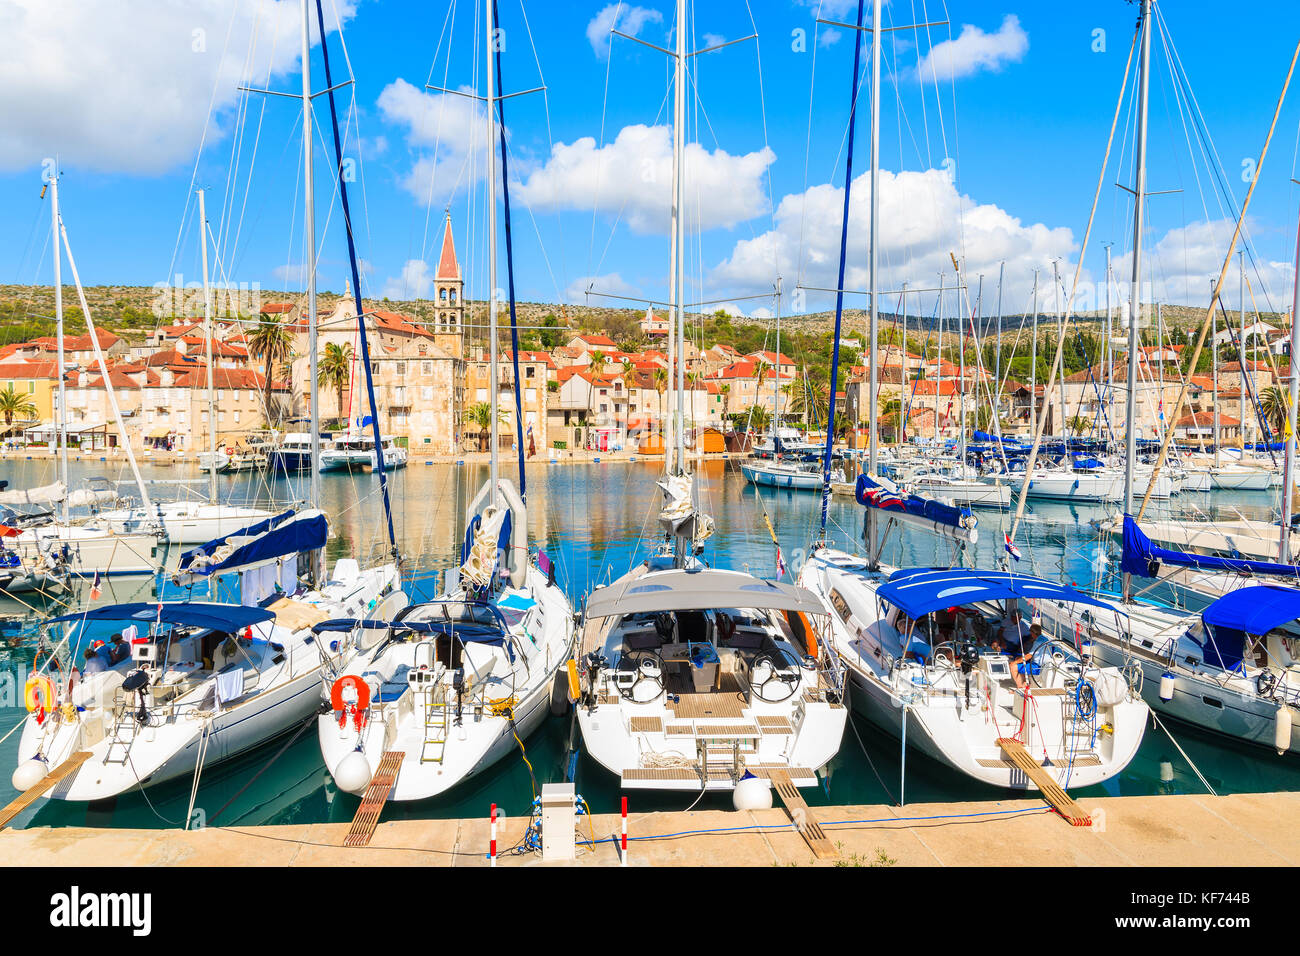 Bateaux à voile s'ancrant dans belle Milna port avec ses maisons colorées en arrière-plan, l'île de Brac, Croatie Banque D'Images